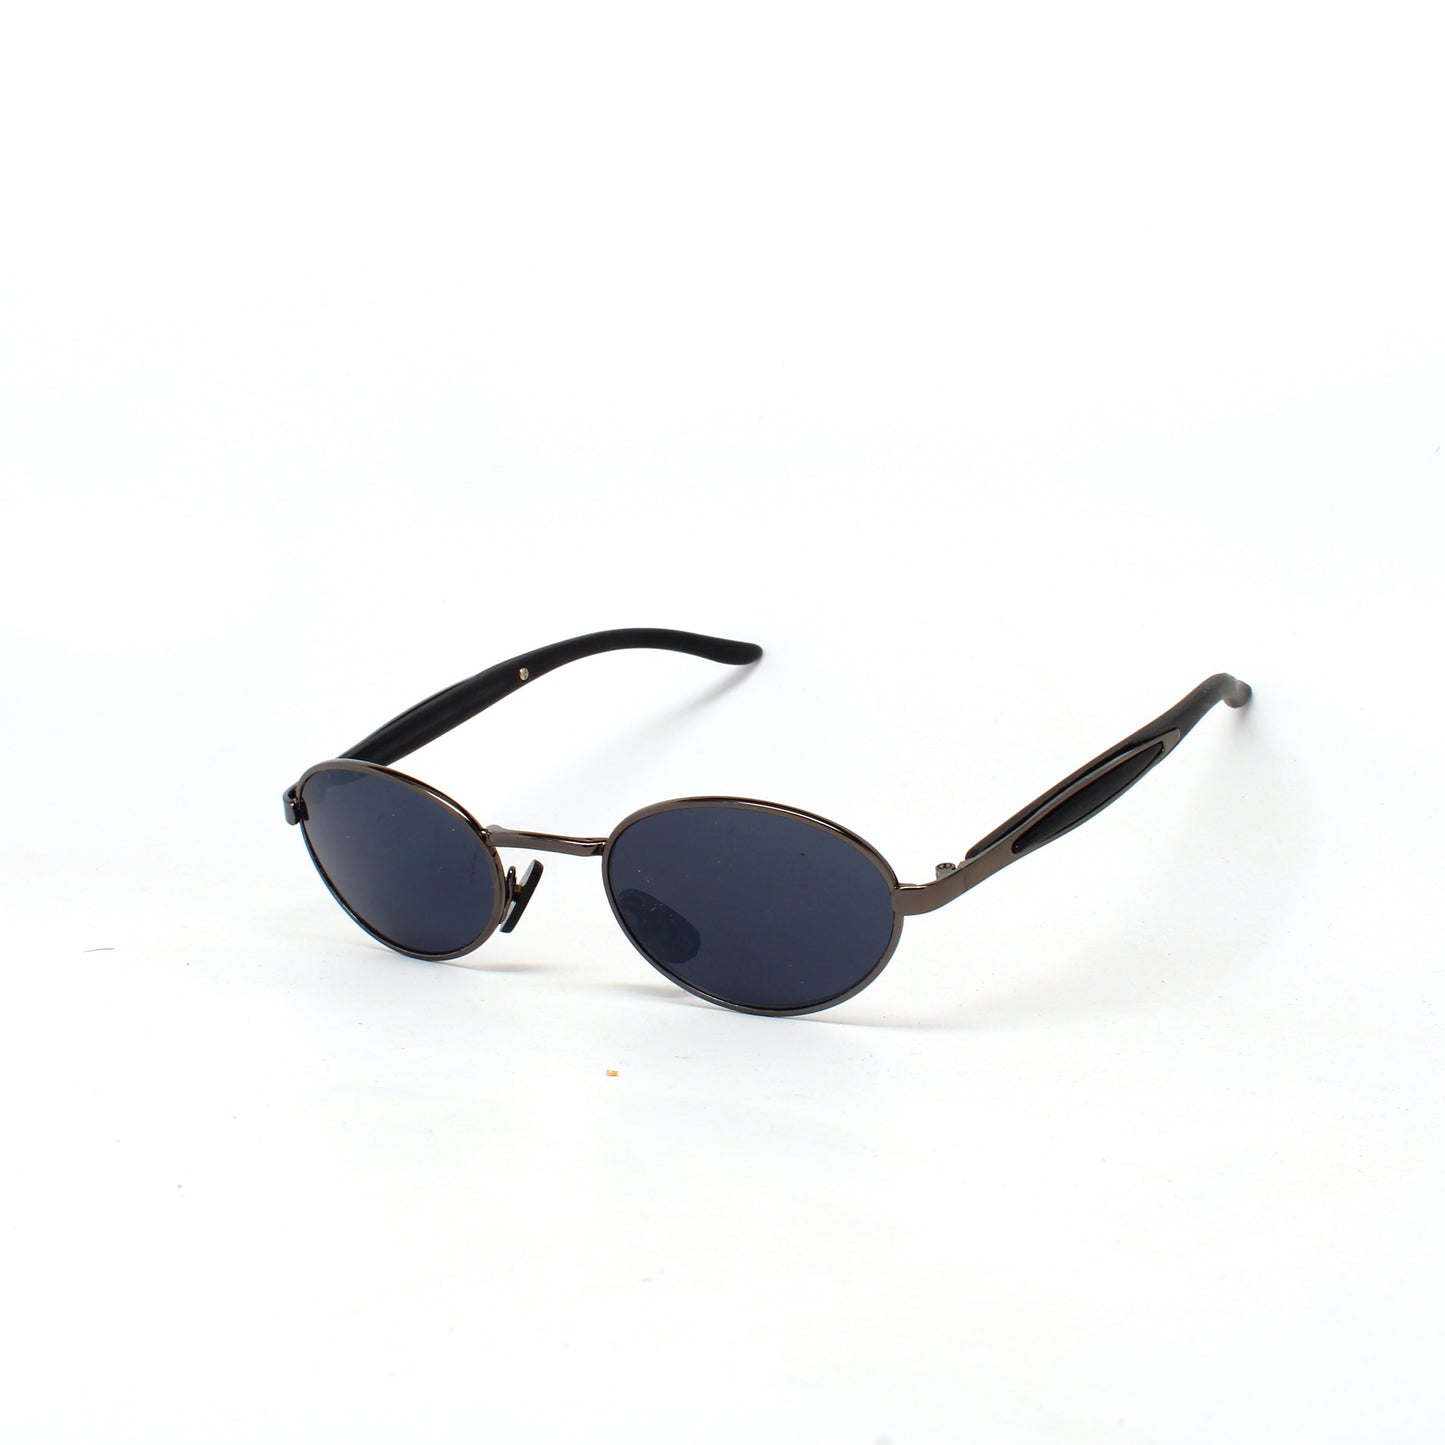 Small Size Mini 90s Deadstock Wraparound Santa Fe Oval Sunglasses - Dark